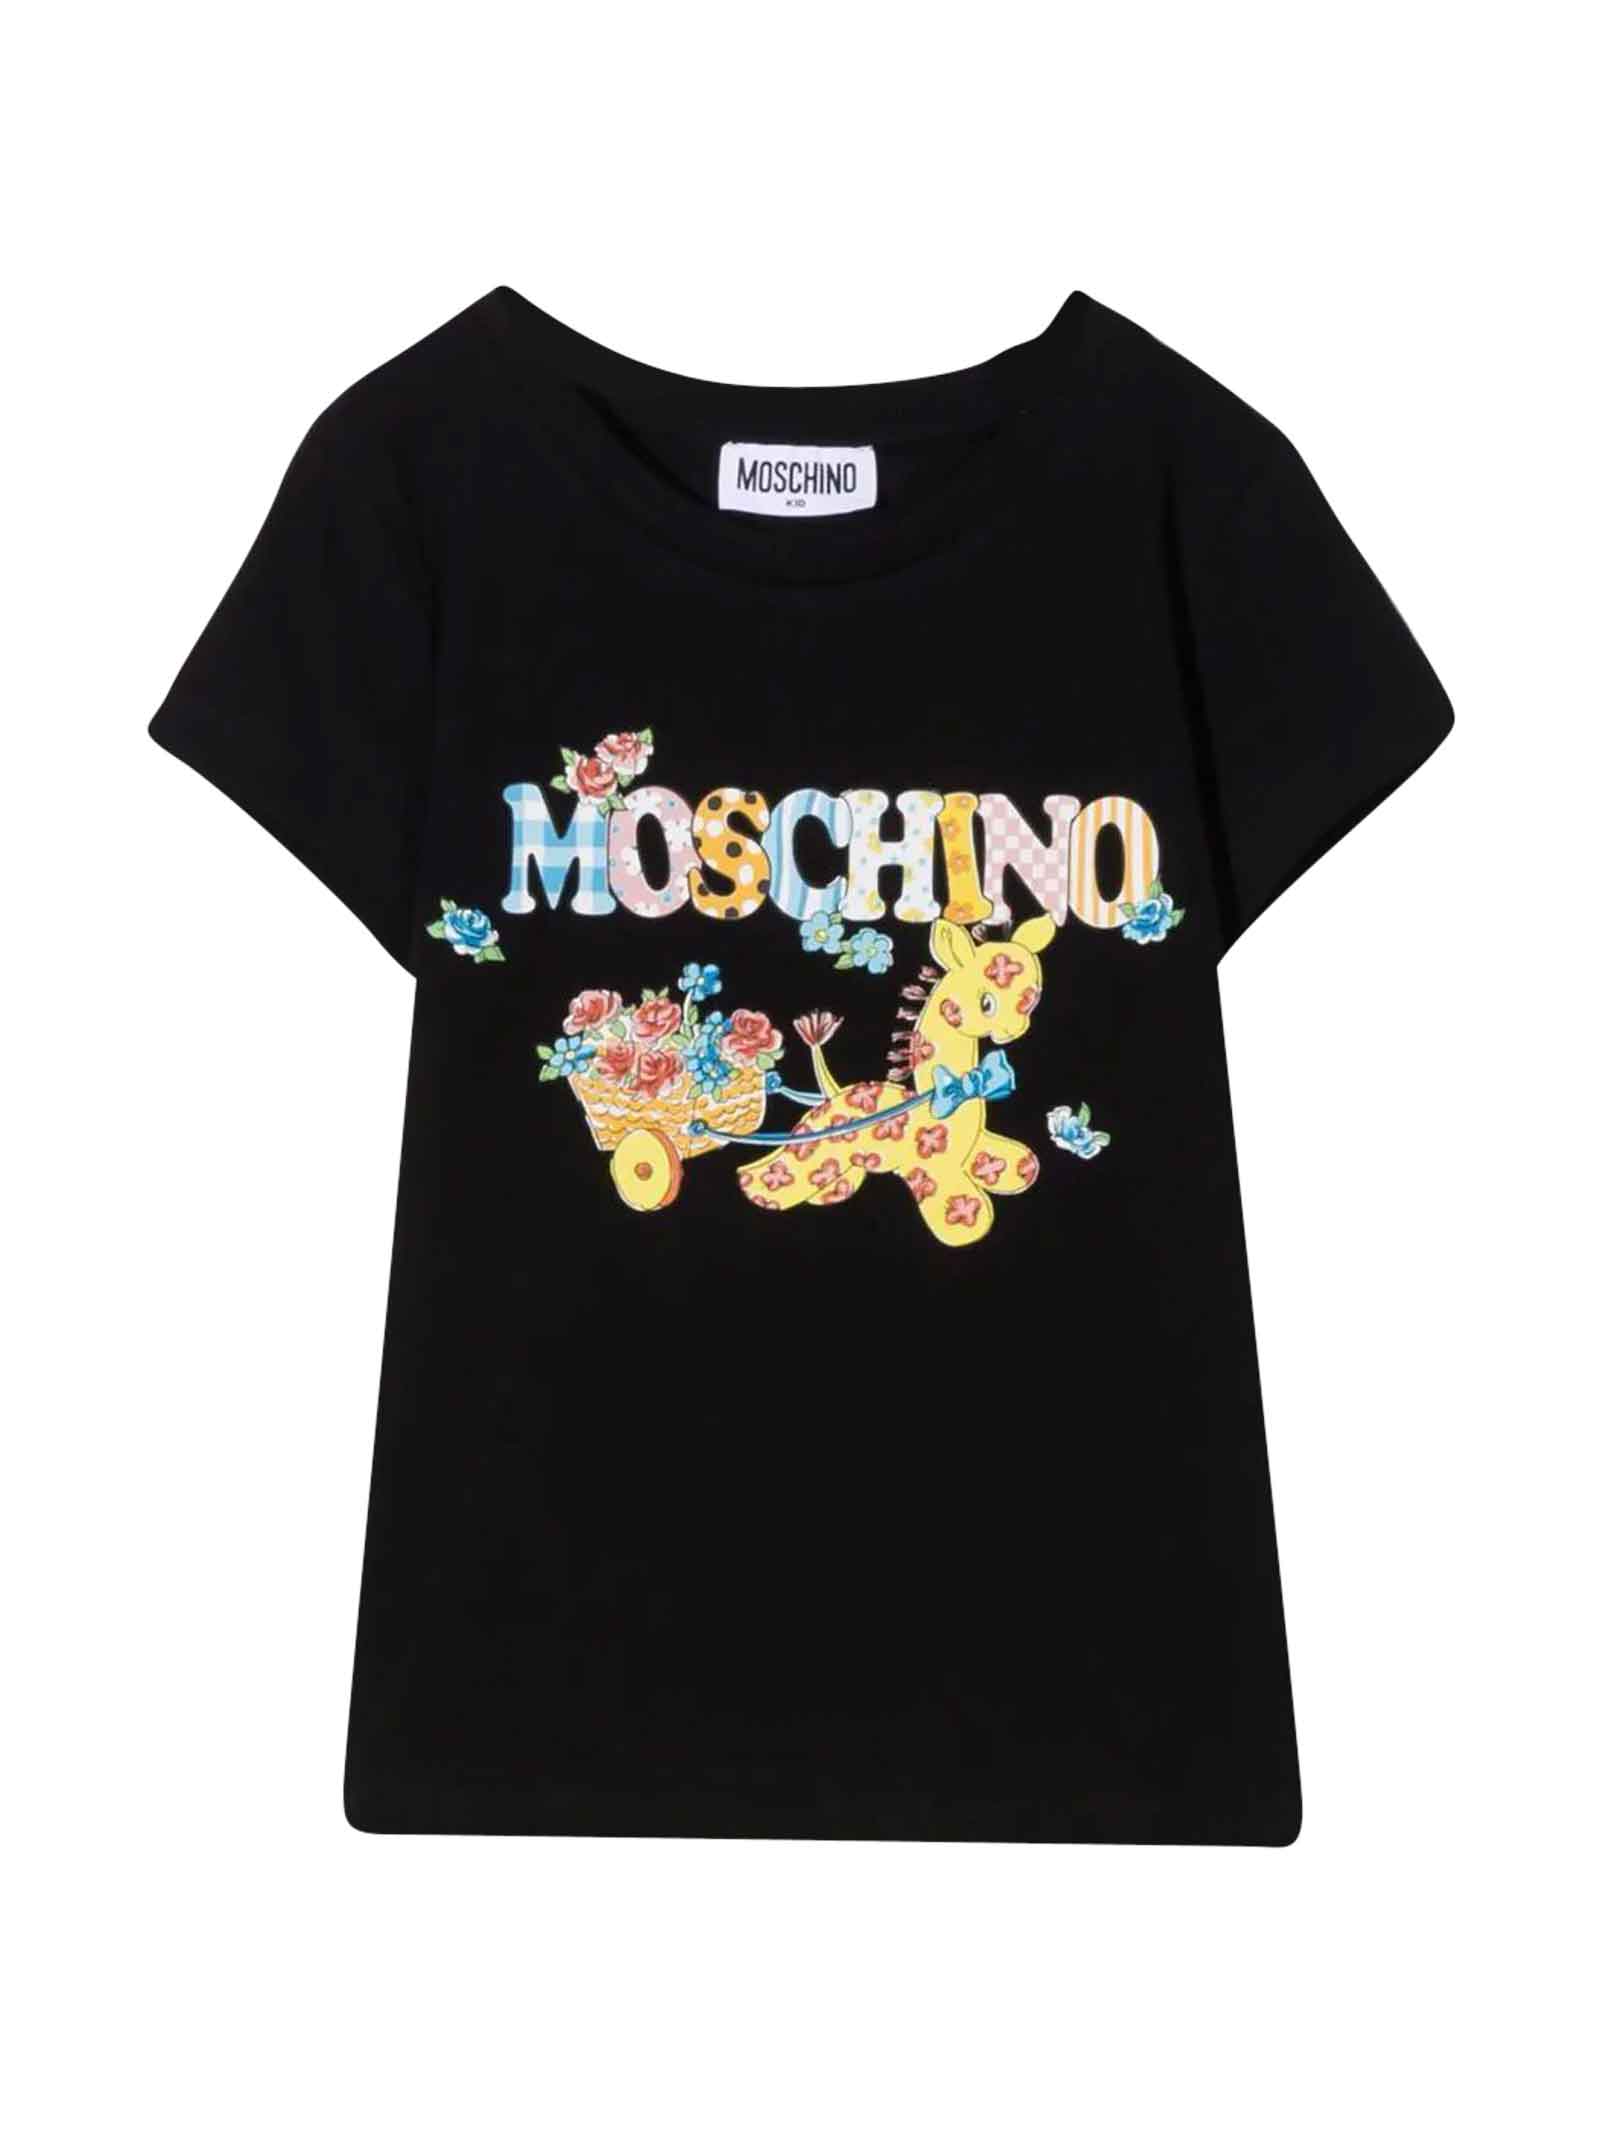 Moschino Black T-shirt Girl